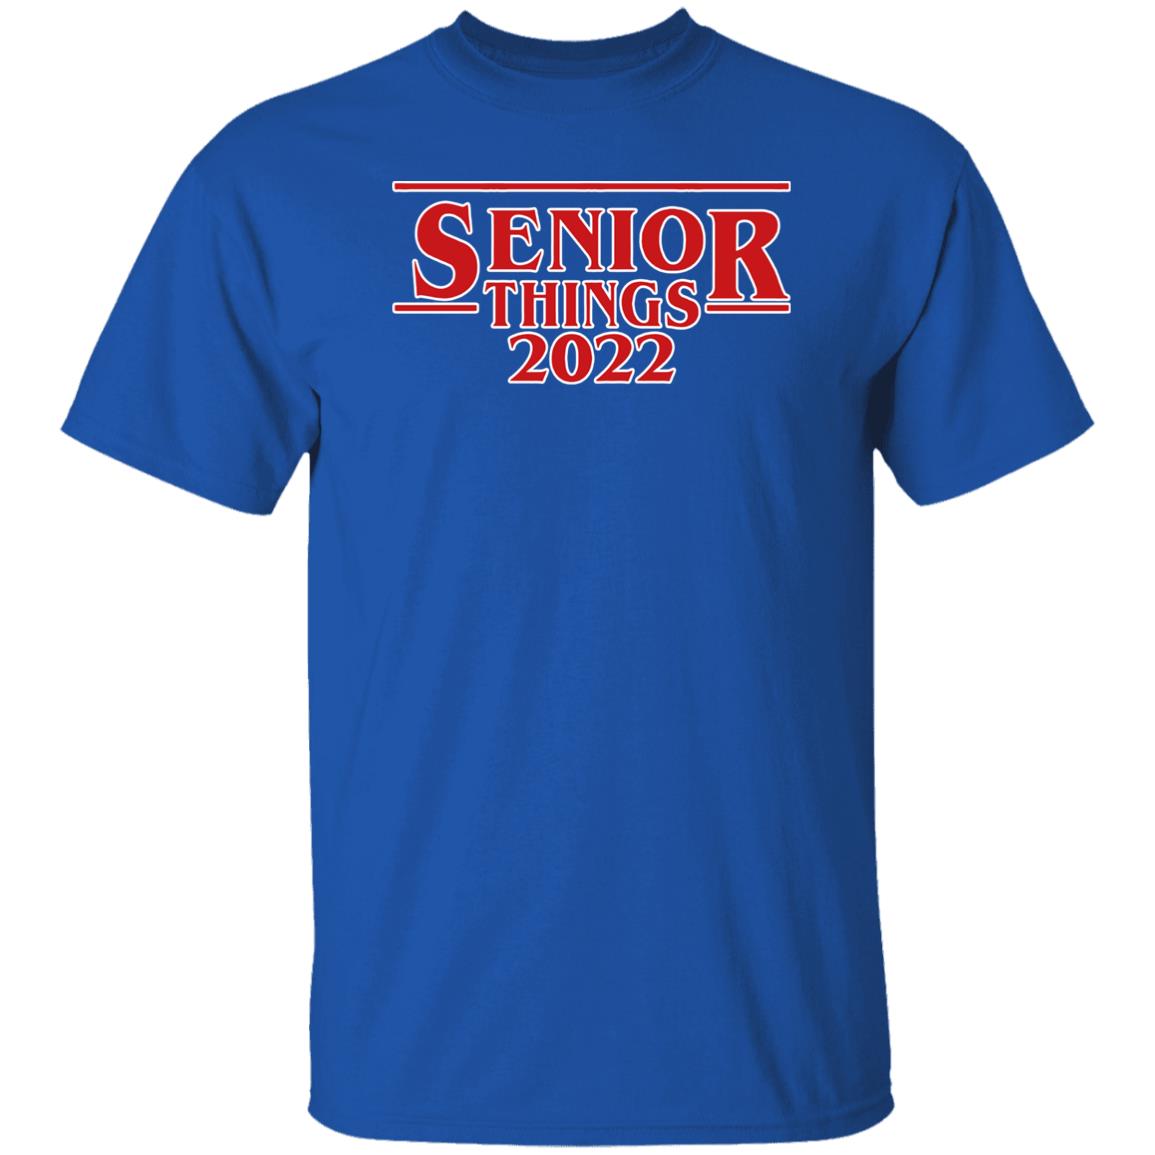 Senior Things 2022 Shirt Nicholas Ferroni